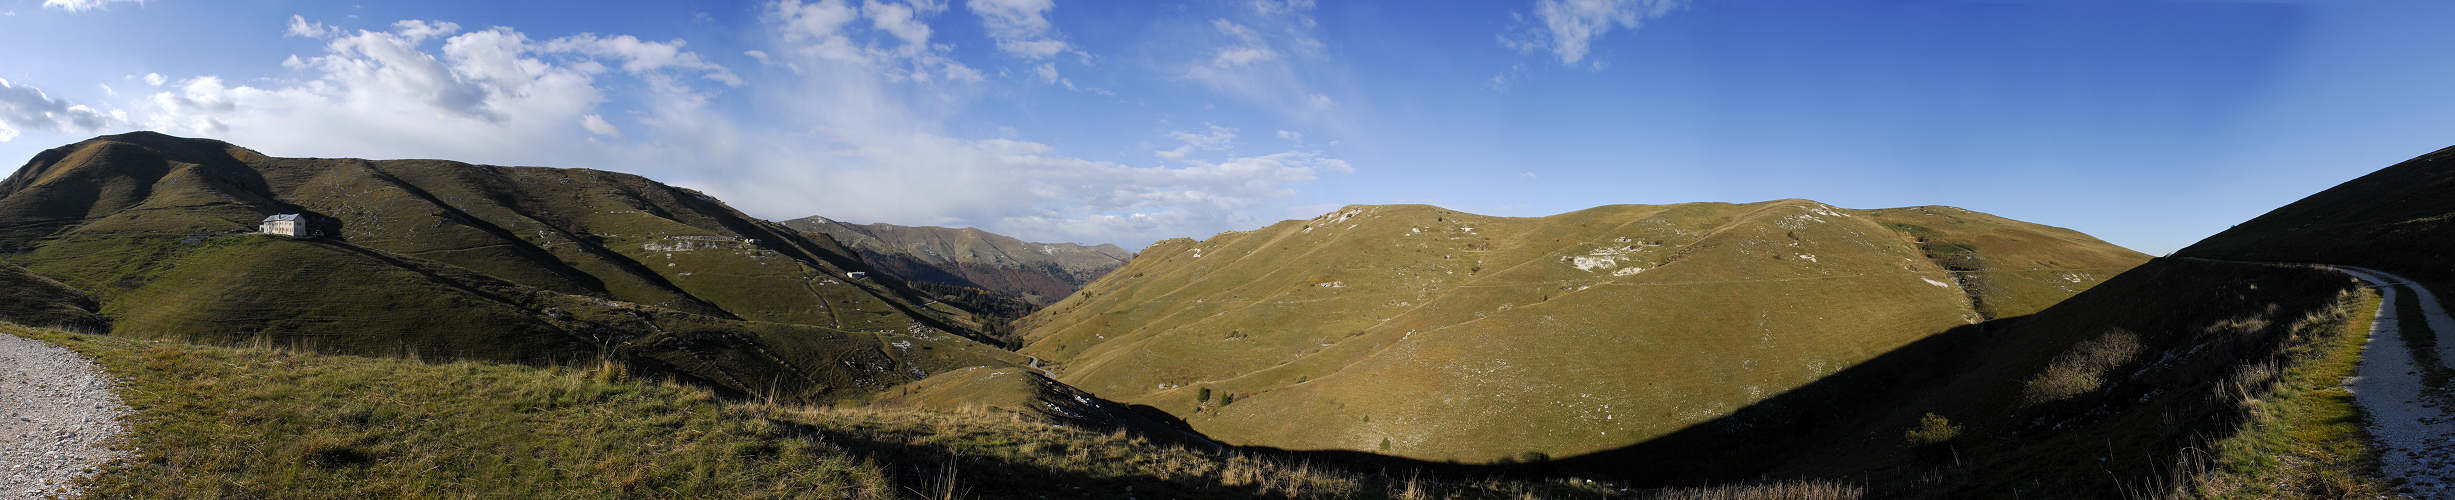 Val Archeson, Monte Grappa - fotografia panoramica